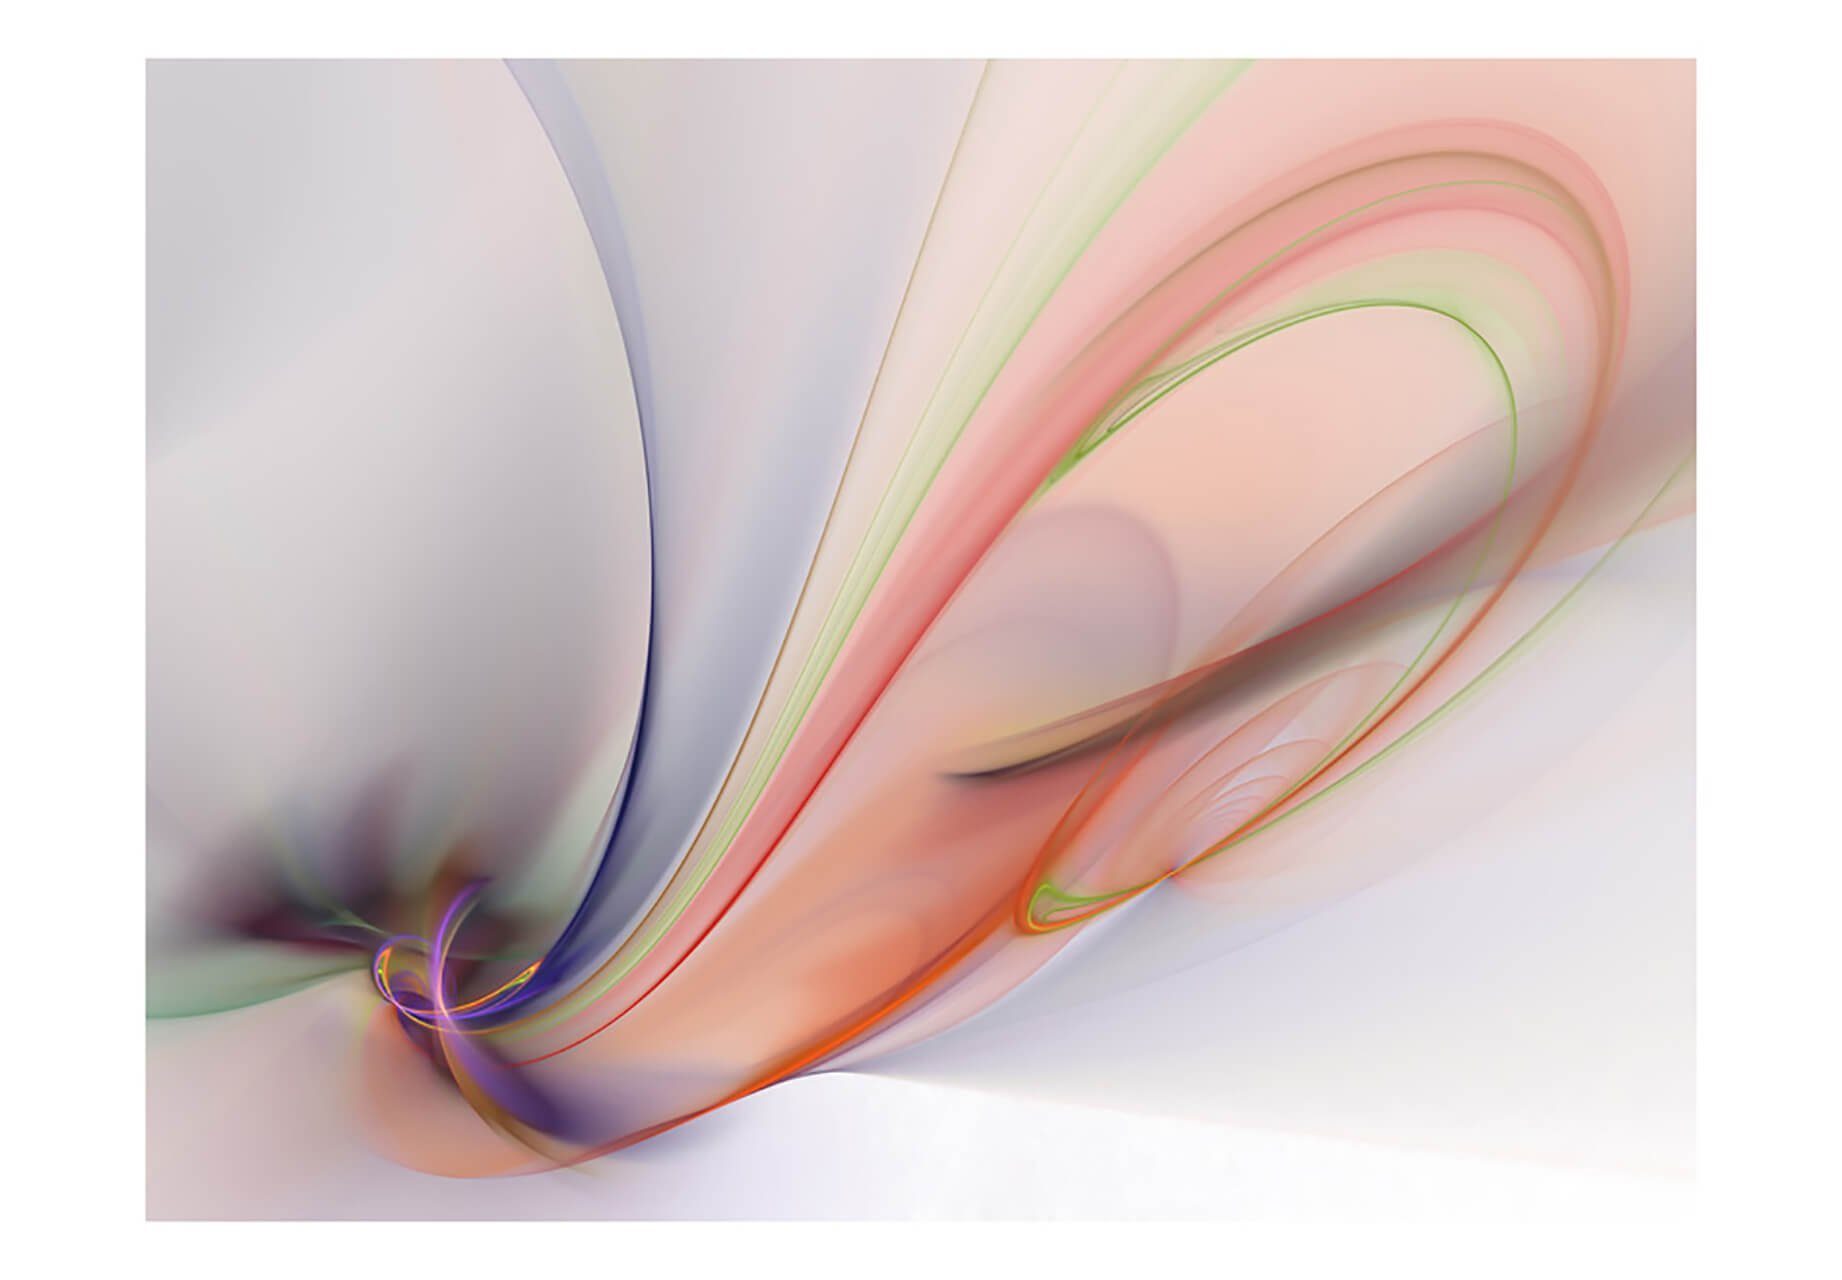 KUNSTLOFT Vliestapete Colourful Infinity 2x1.54 m, halb-matt, lichtbeständige Design Tapete